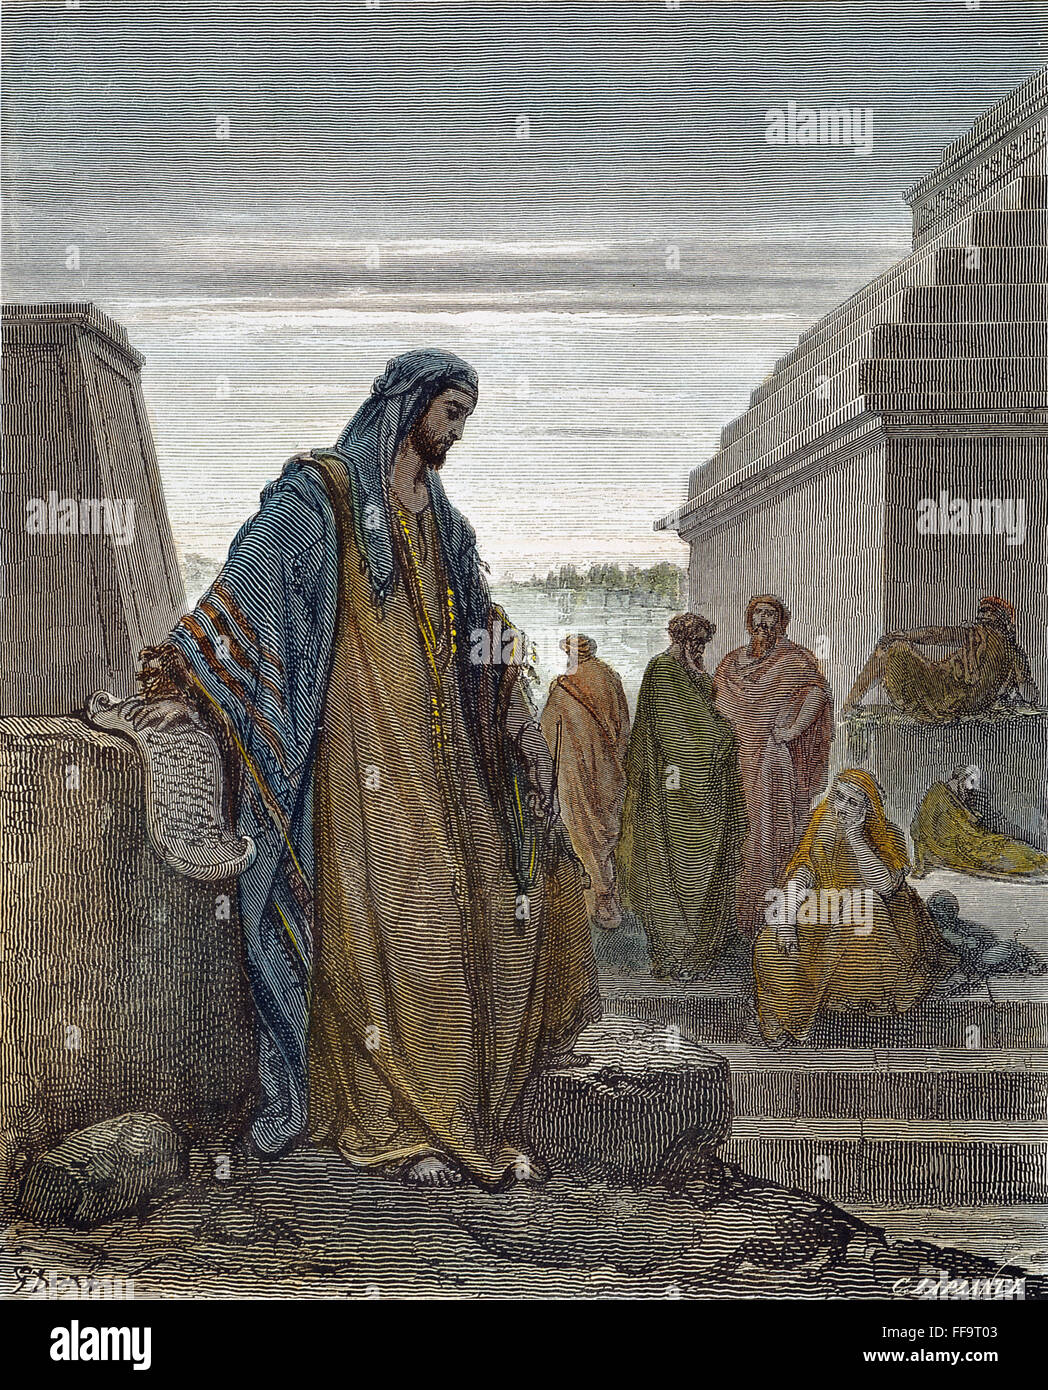 DANIEL. /nThe Prophet Daniel. Holzstich nach Gustave DorΘ. Stockfoto